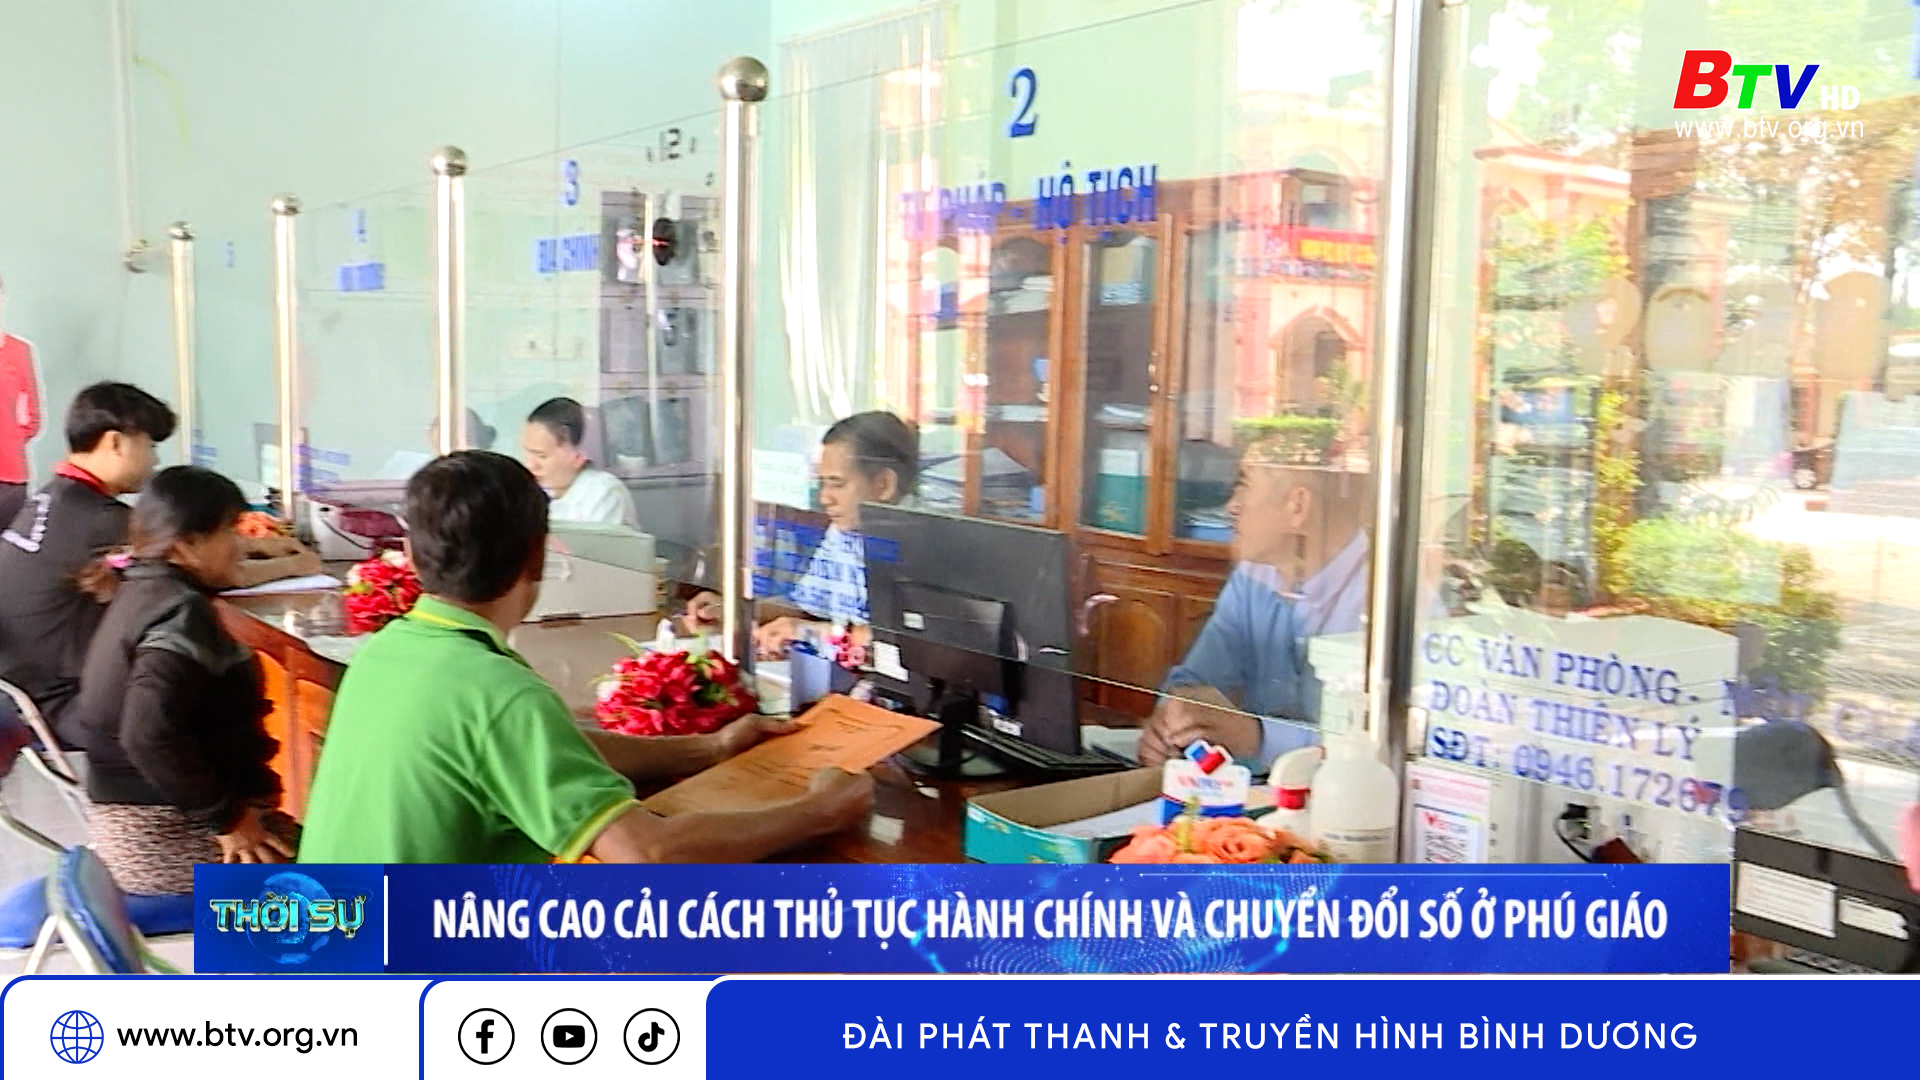 Nâng cao cải cách thủ tục hành chính và chuyển đổi số ở Phú Giáo